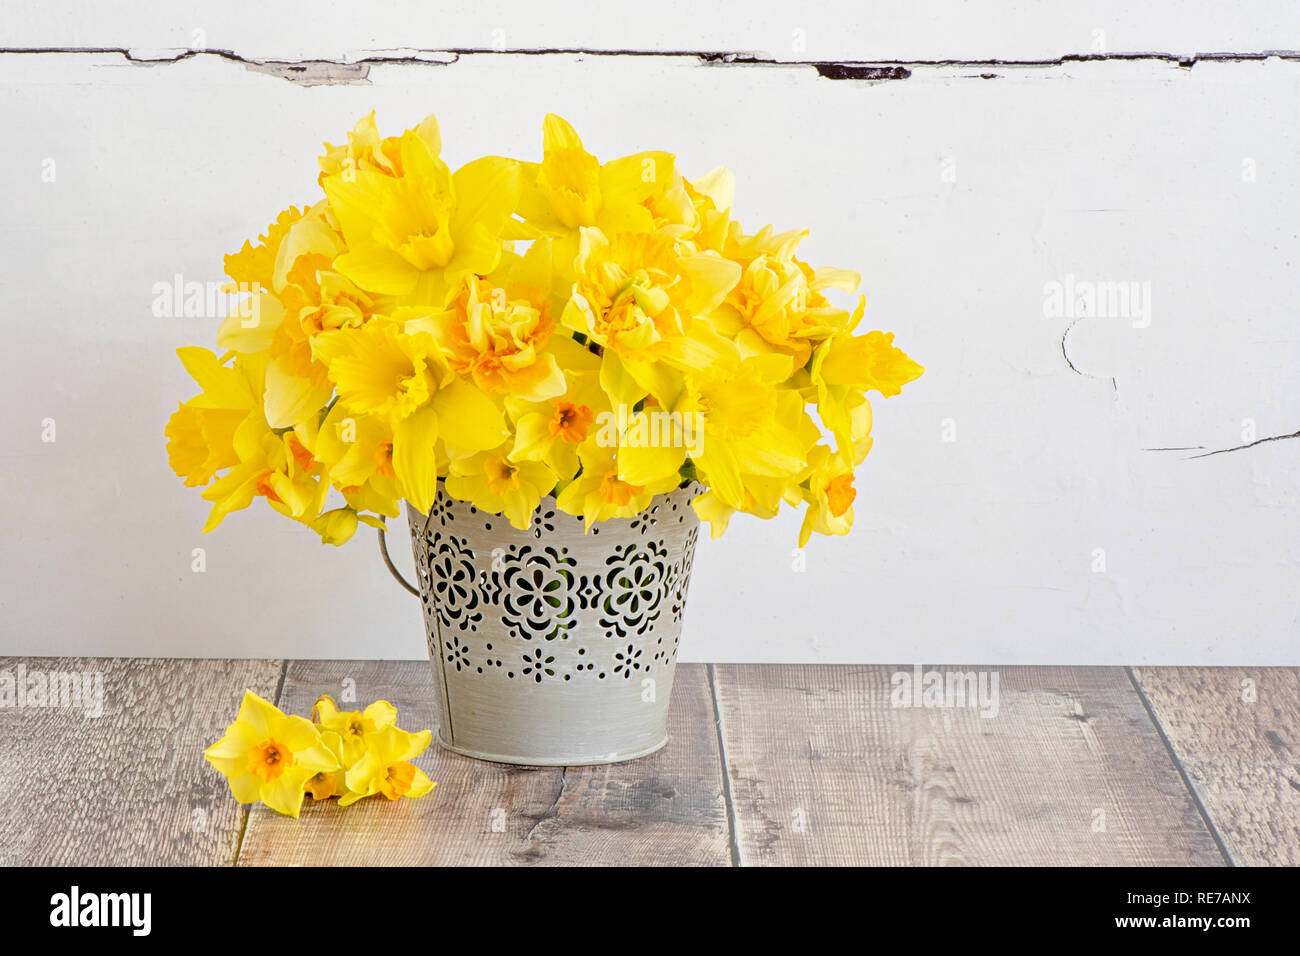 Close-up, toujours et la vie libre de belles fleurs de printemps, narcisses, jonquilles jaune disposés dans un godet gris ornementé. Banque D'Images